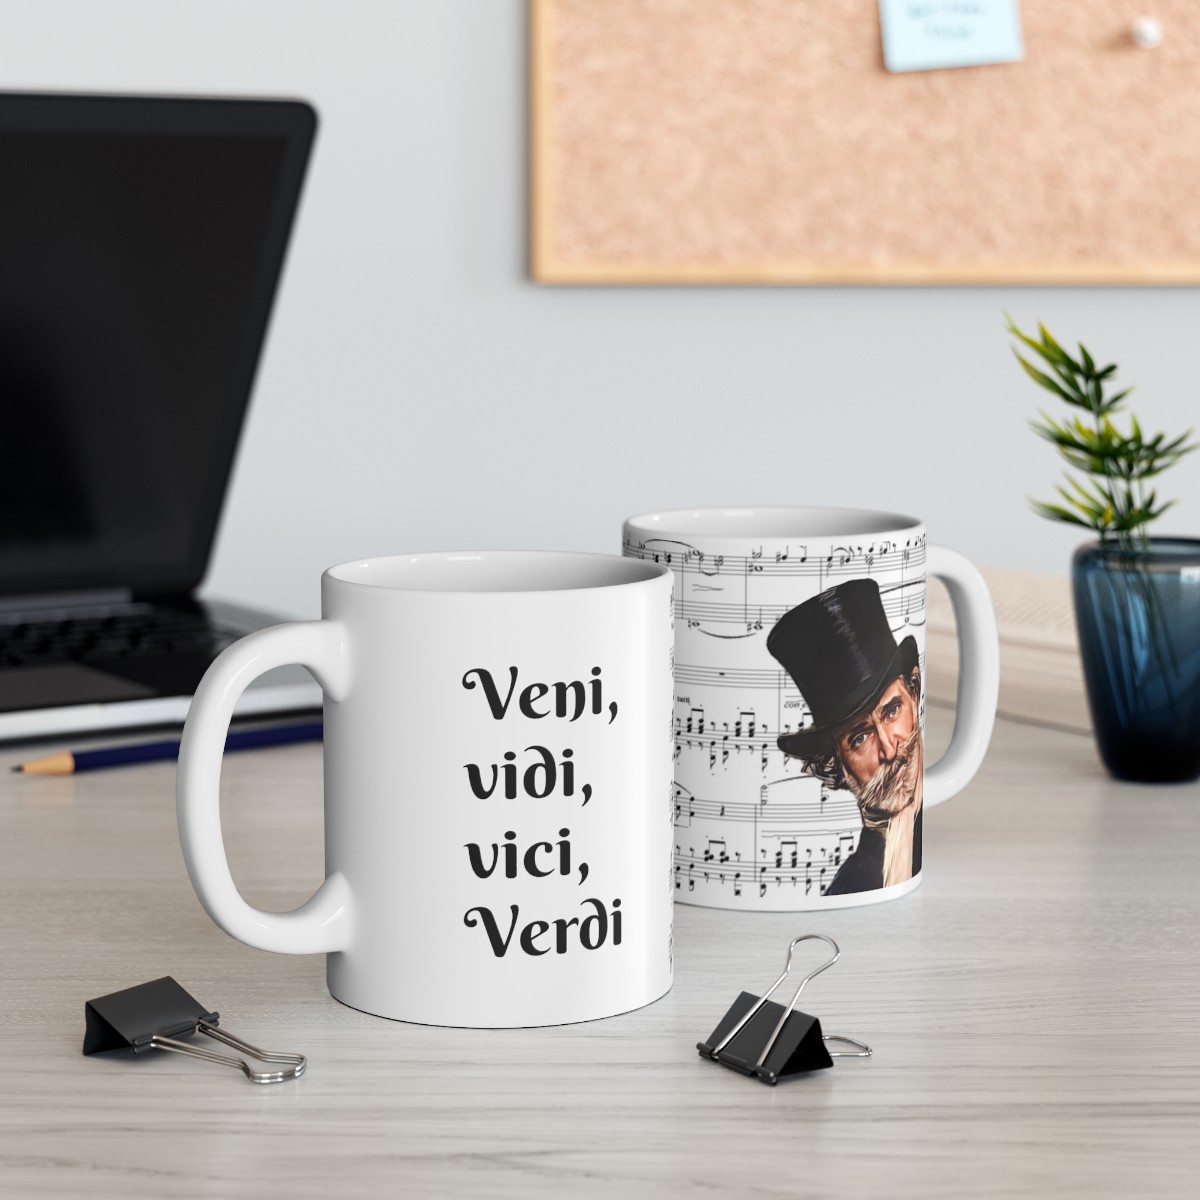 "Veni, vidi, vici, Verdi" Verdi Sheet Music Ceramic Mug 11oz product thumbnail image